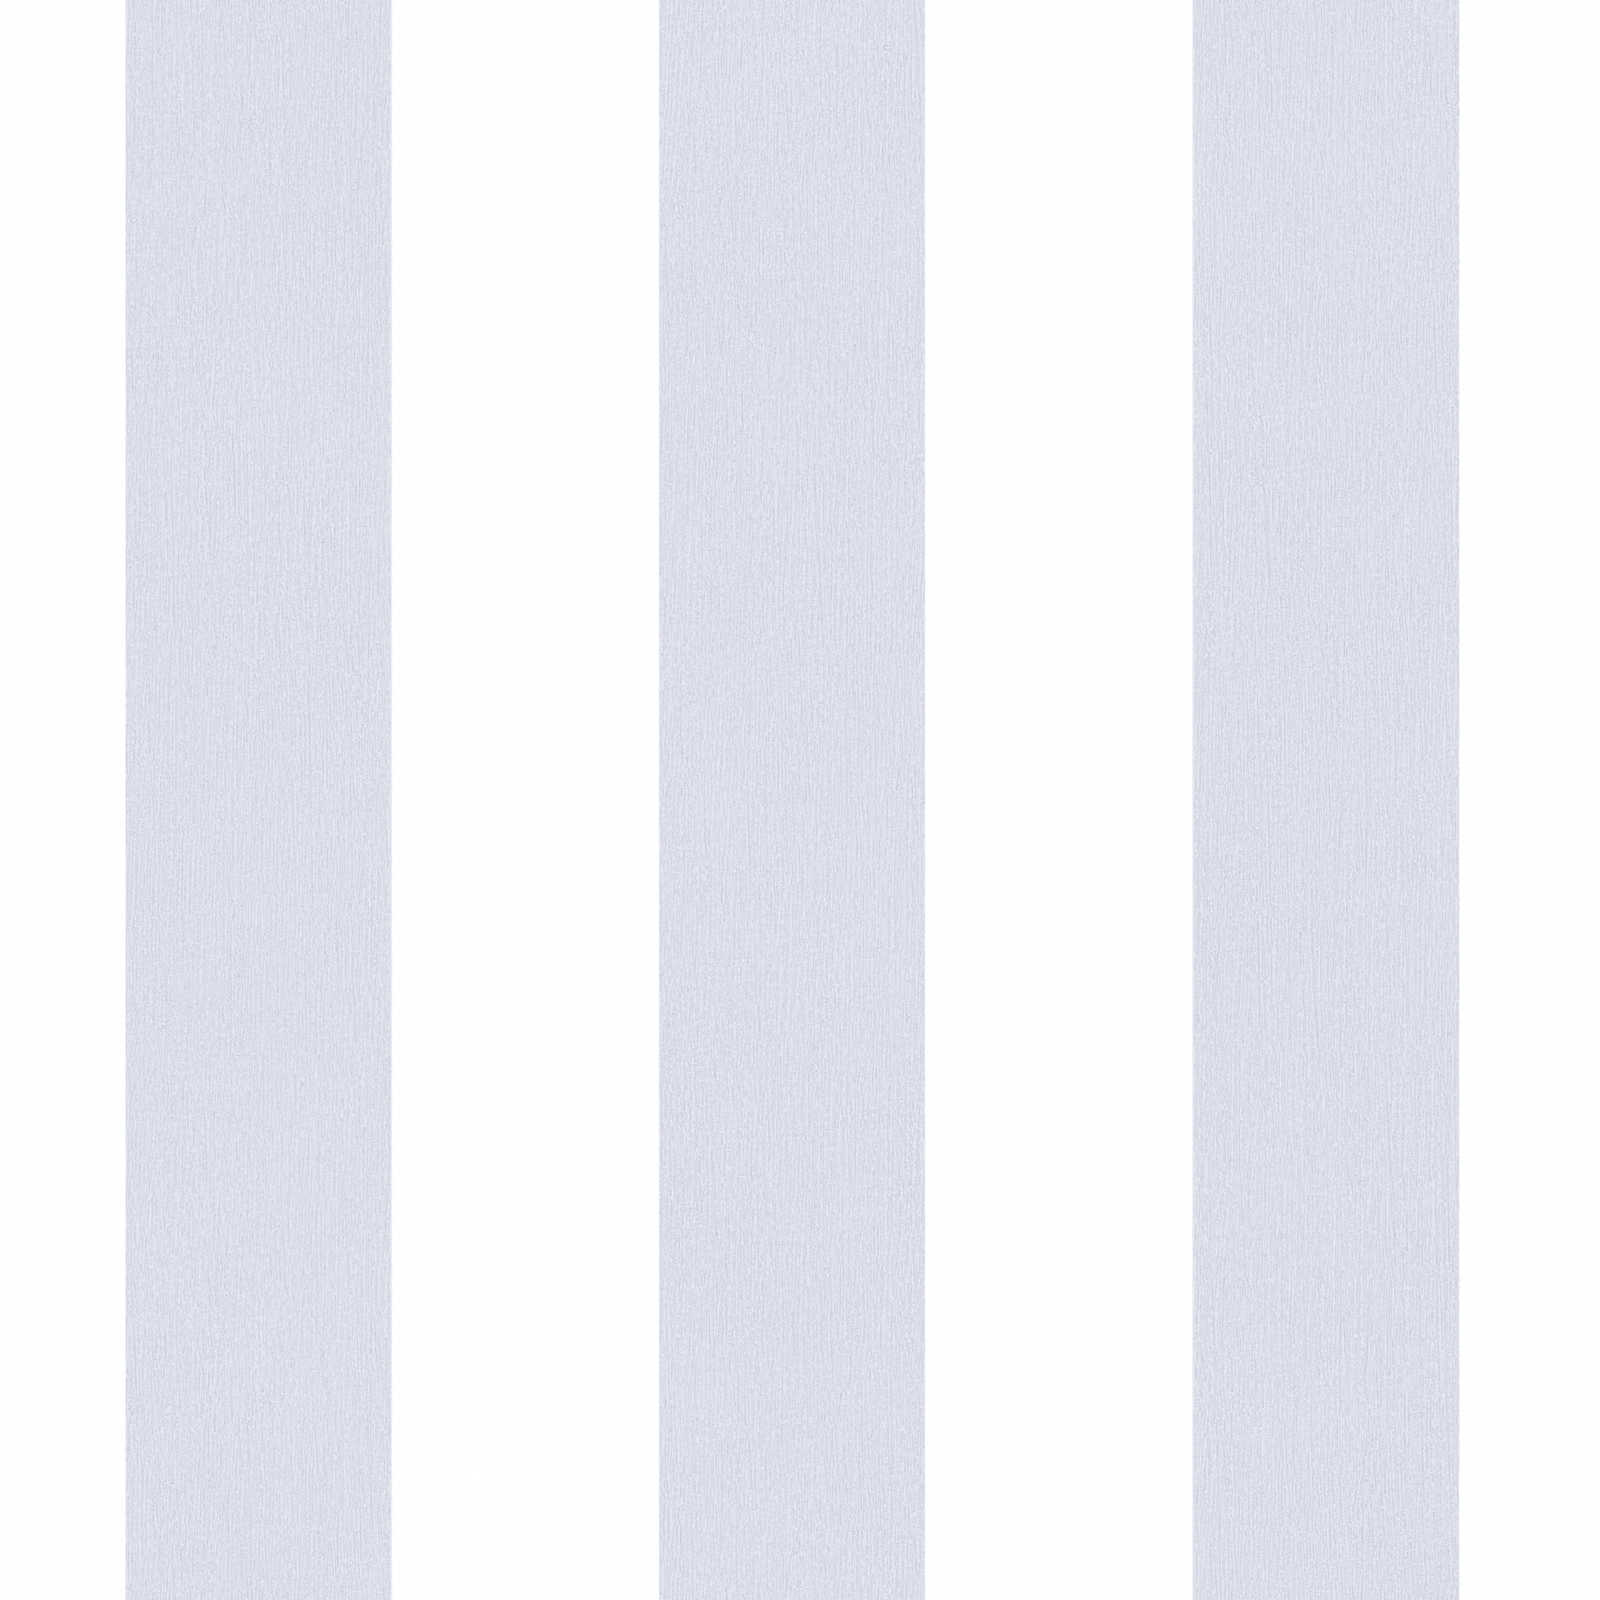             Tapete Kinderzimmer vertikale Streifen – Grau, Weiß
        